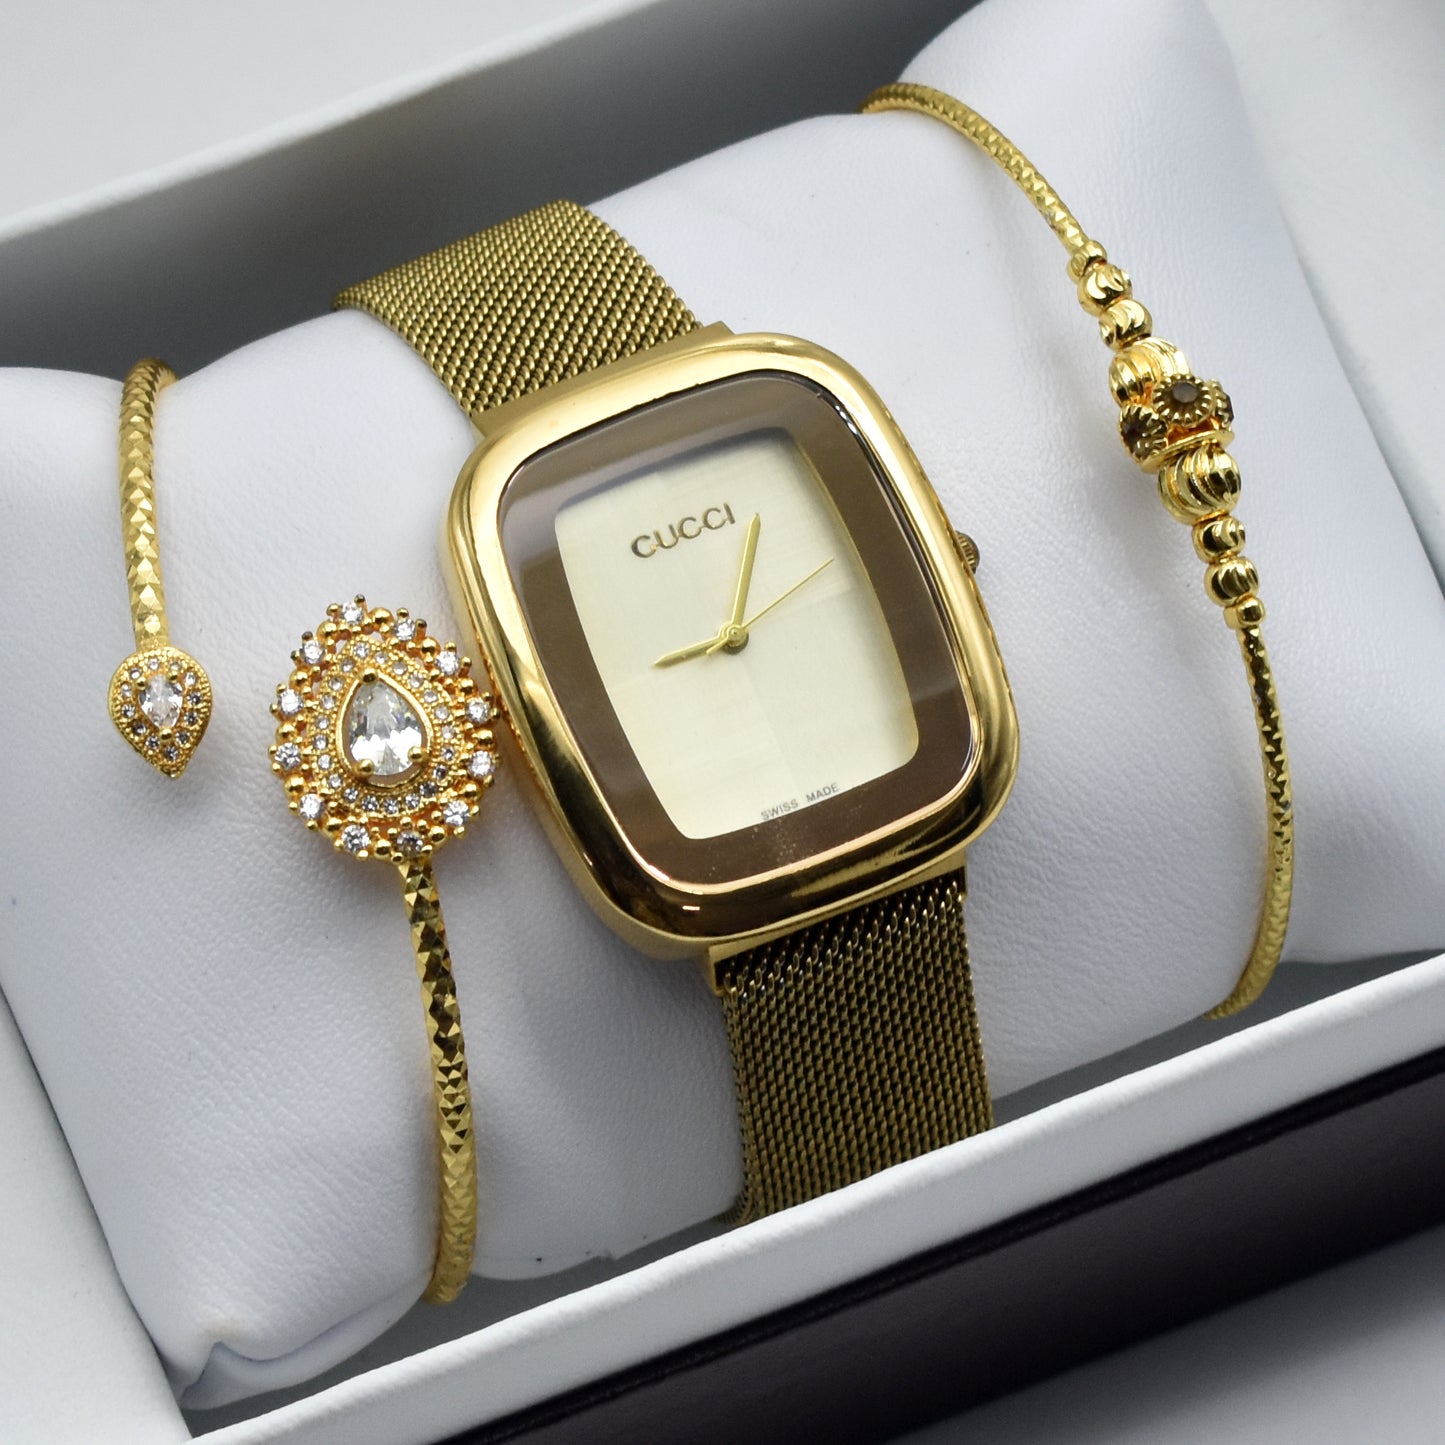 Stylish Quality Bracelet Watch for Her - GC Watch 01